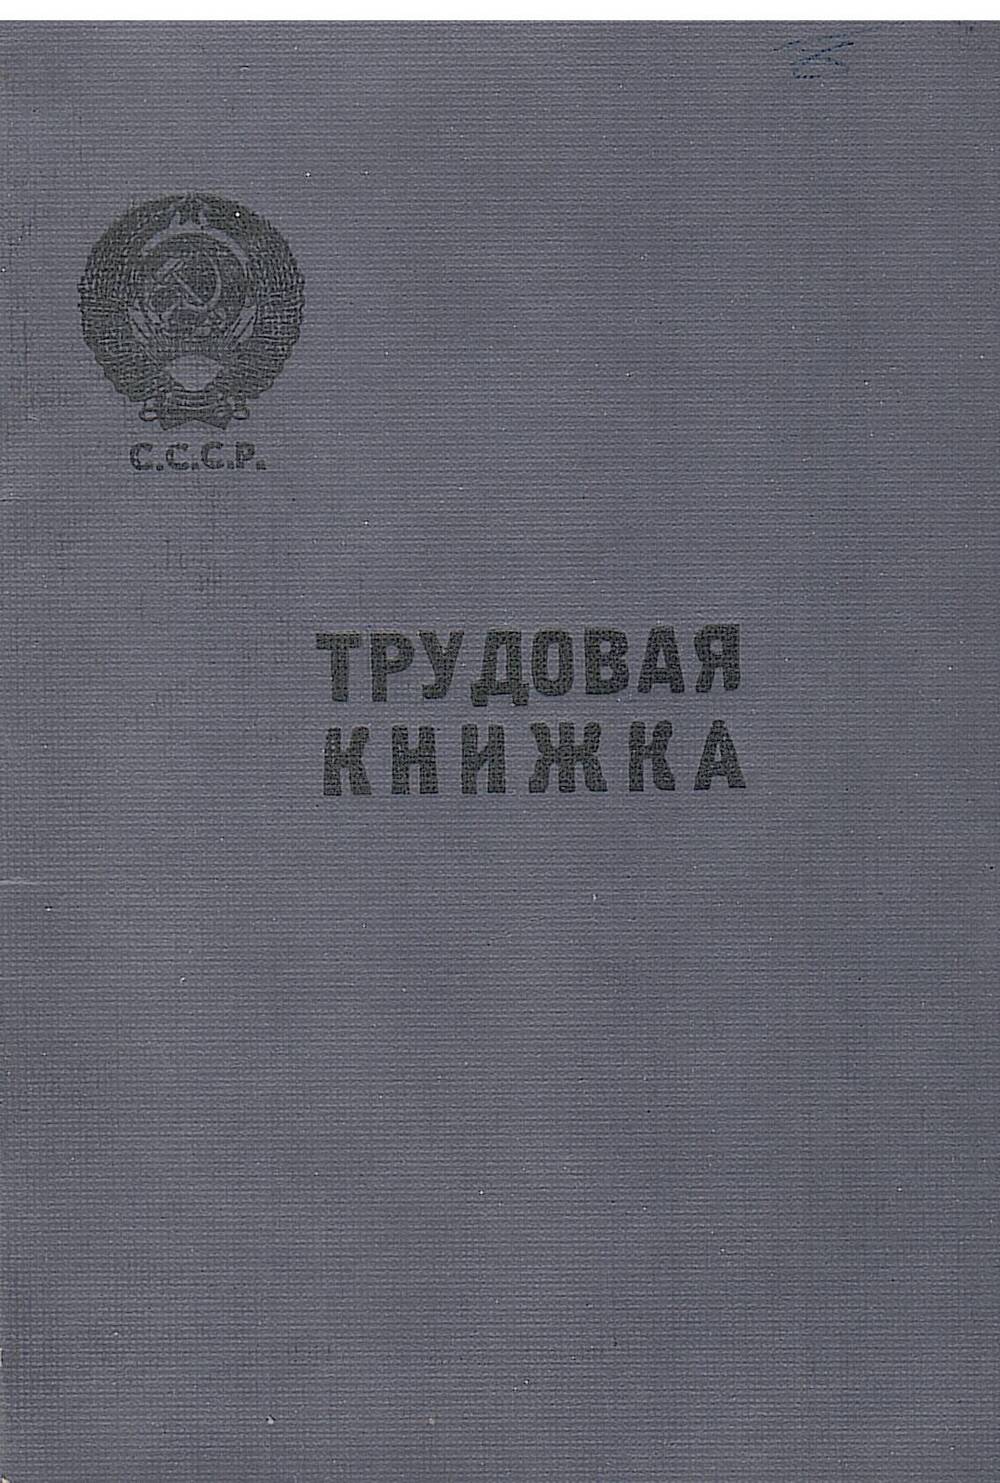 Трудовая книжка Бондаревой В.Г.